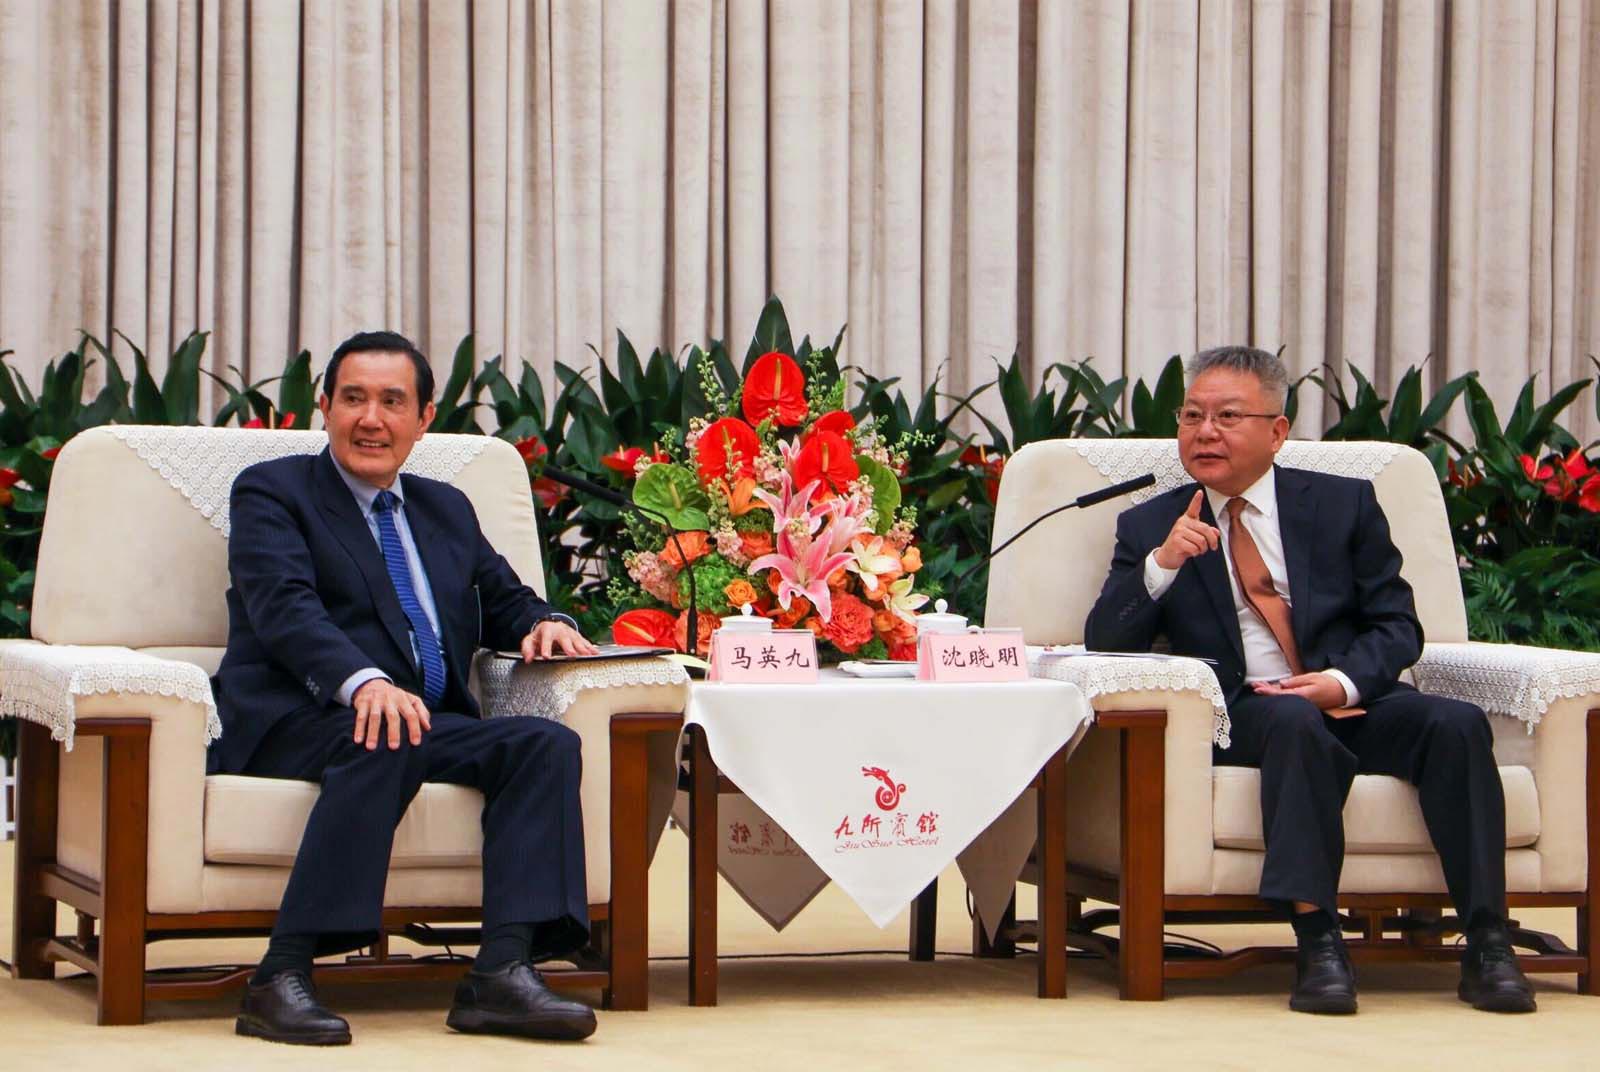 Ma Ying-jeou’s China visit opened a Pandora’s Box